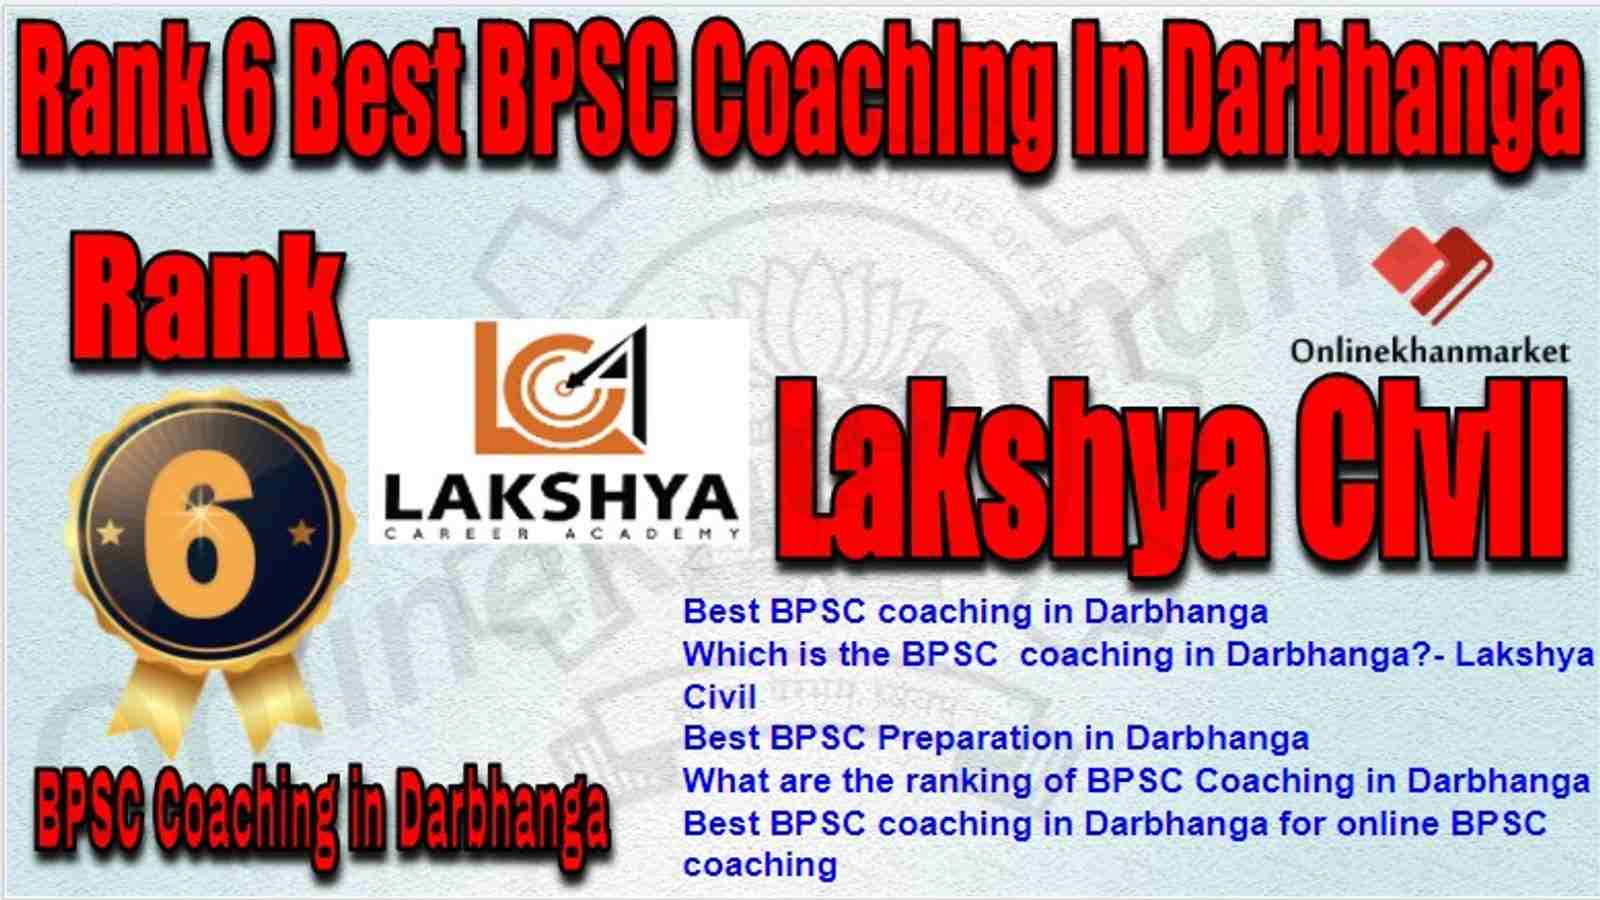 Rank 6 Best BPSC Coaching in darbhanga